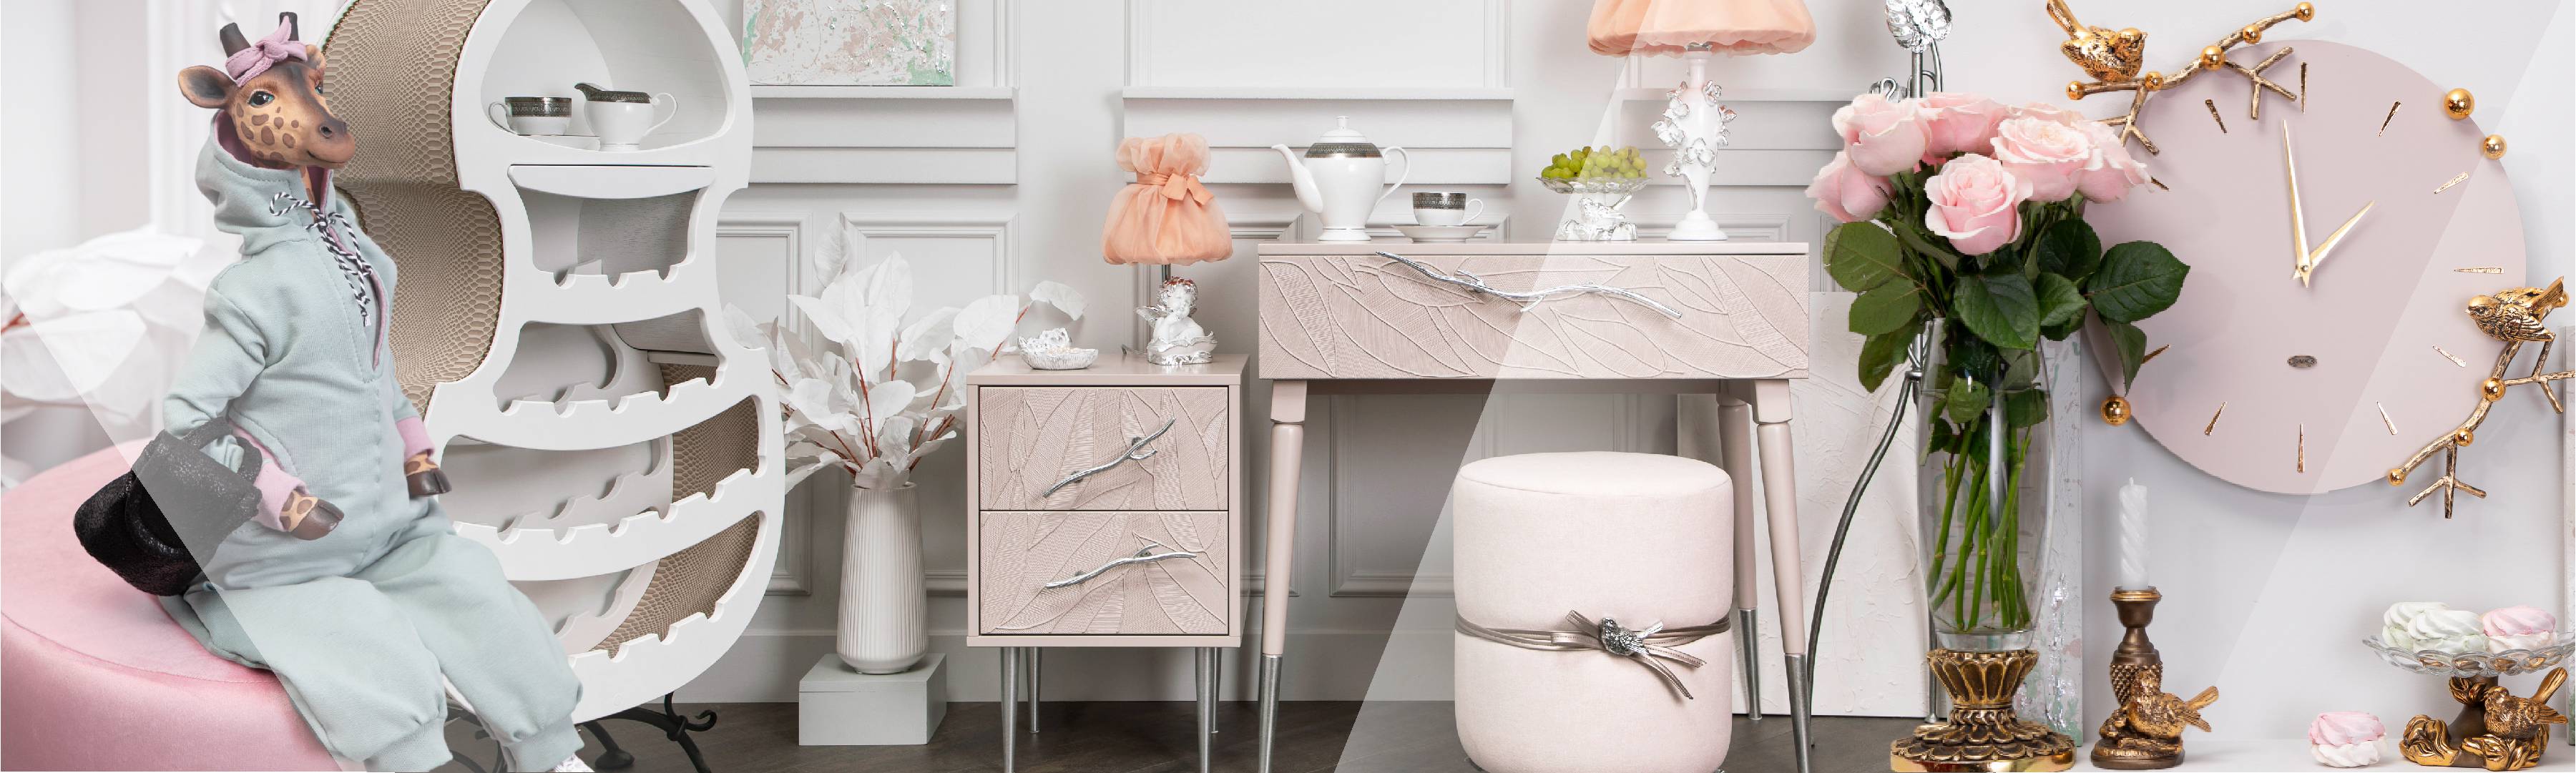 Мебель и декор для интерьера в пыльно-розовых тонах